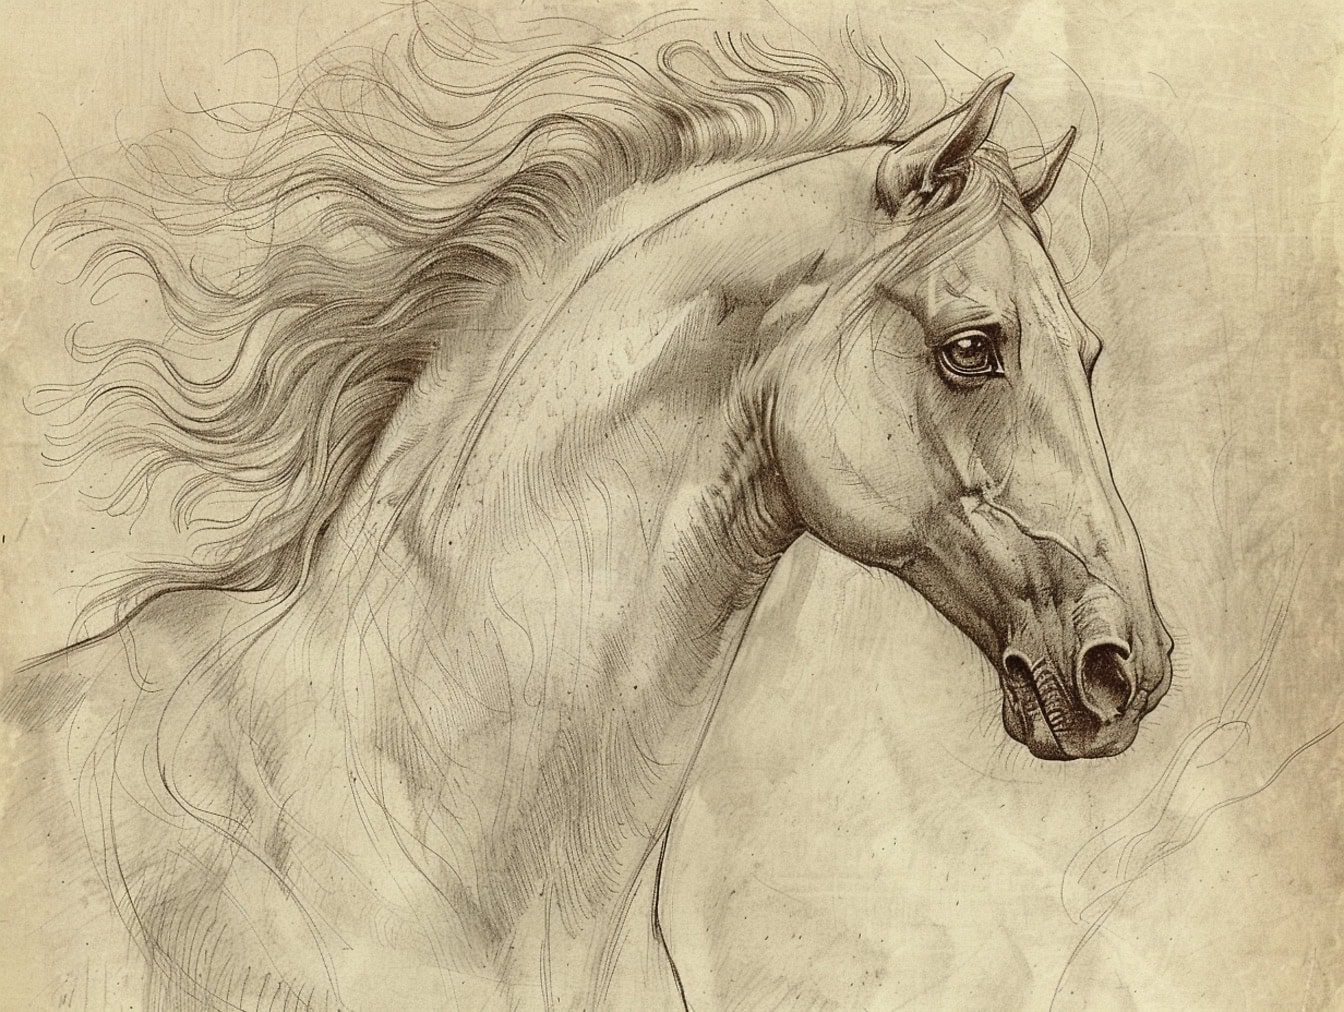 Schiță a unui cap de cal pe hârtie gălbuie veche, cu accent pe un ochi blând al unui armăsar